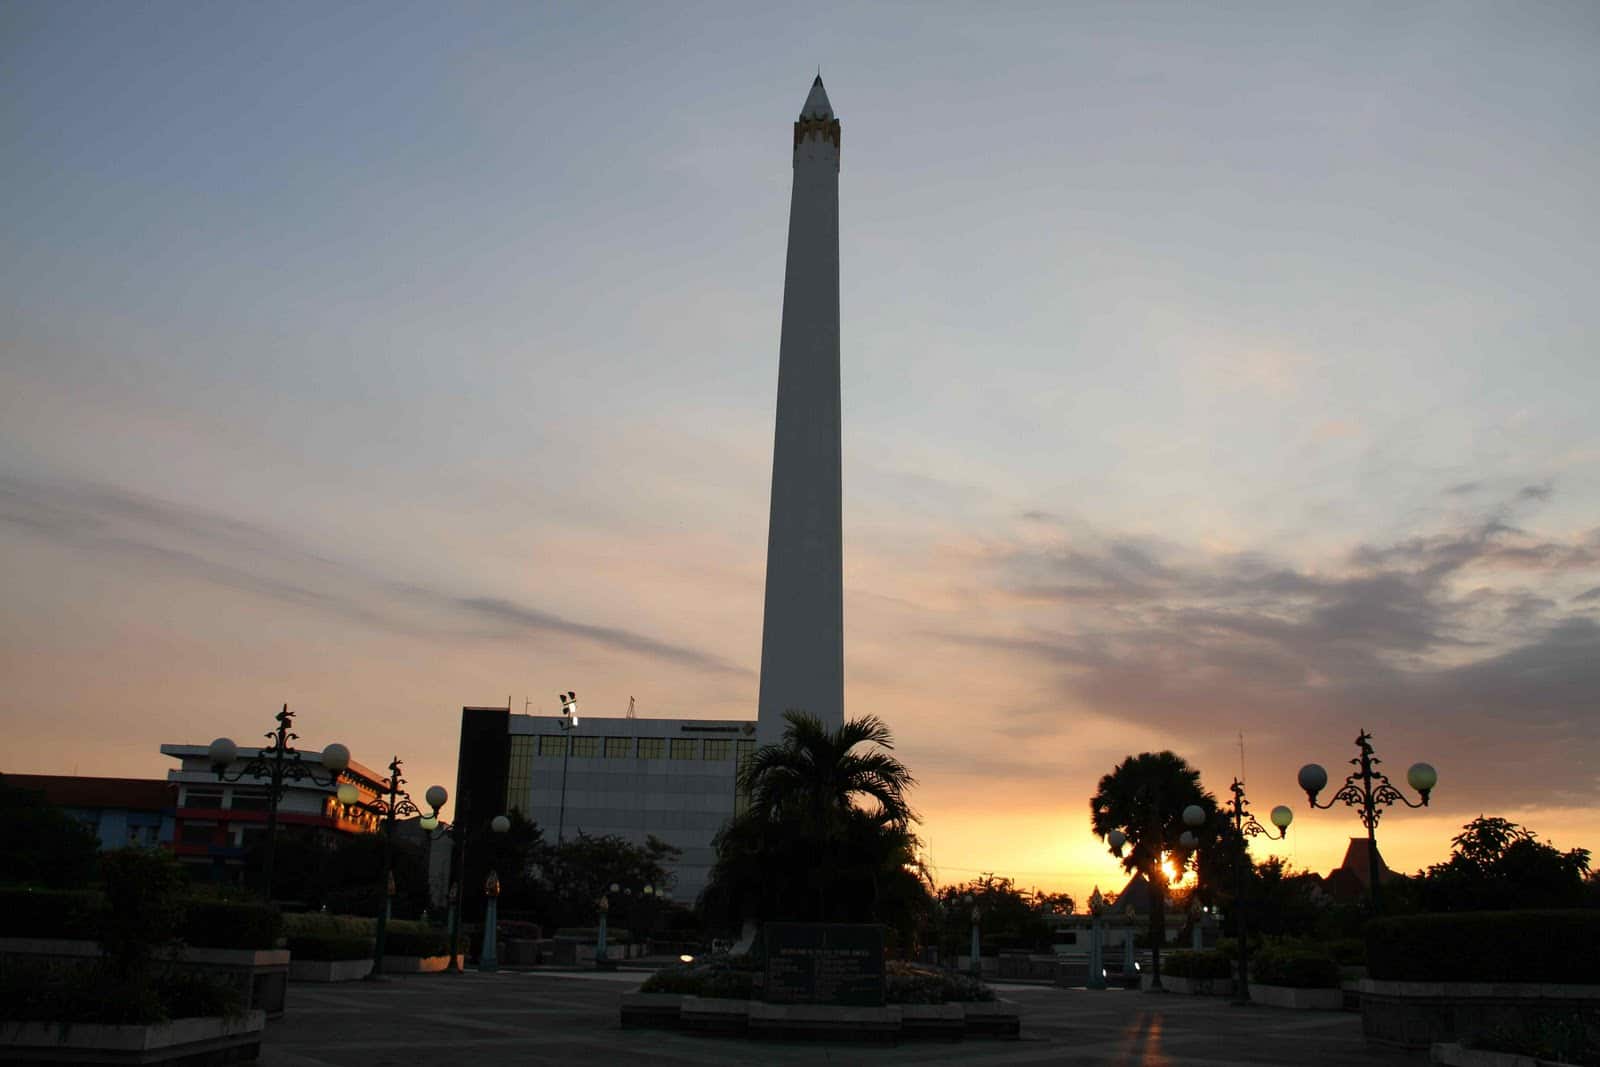 Tempat Menarik Di Kota Pahlawan Surabaya Apa Kata Deny